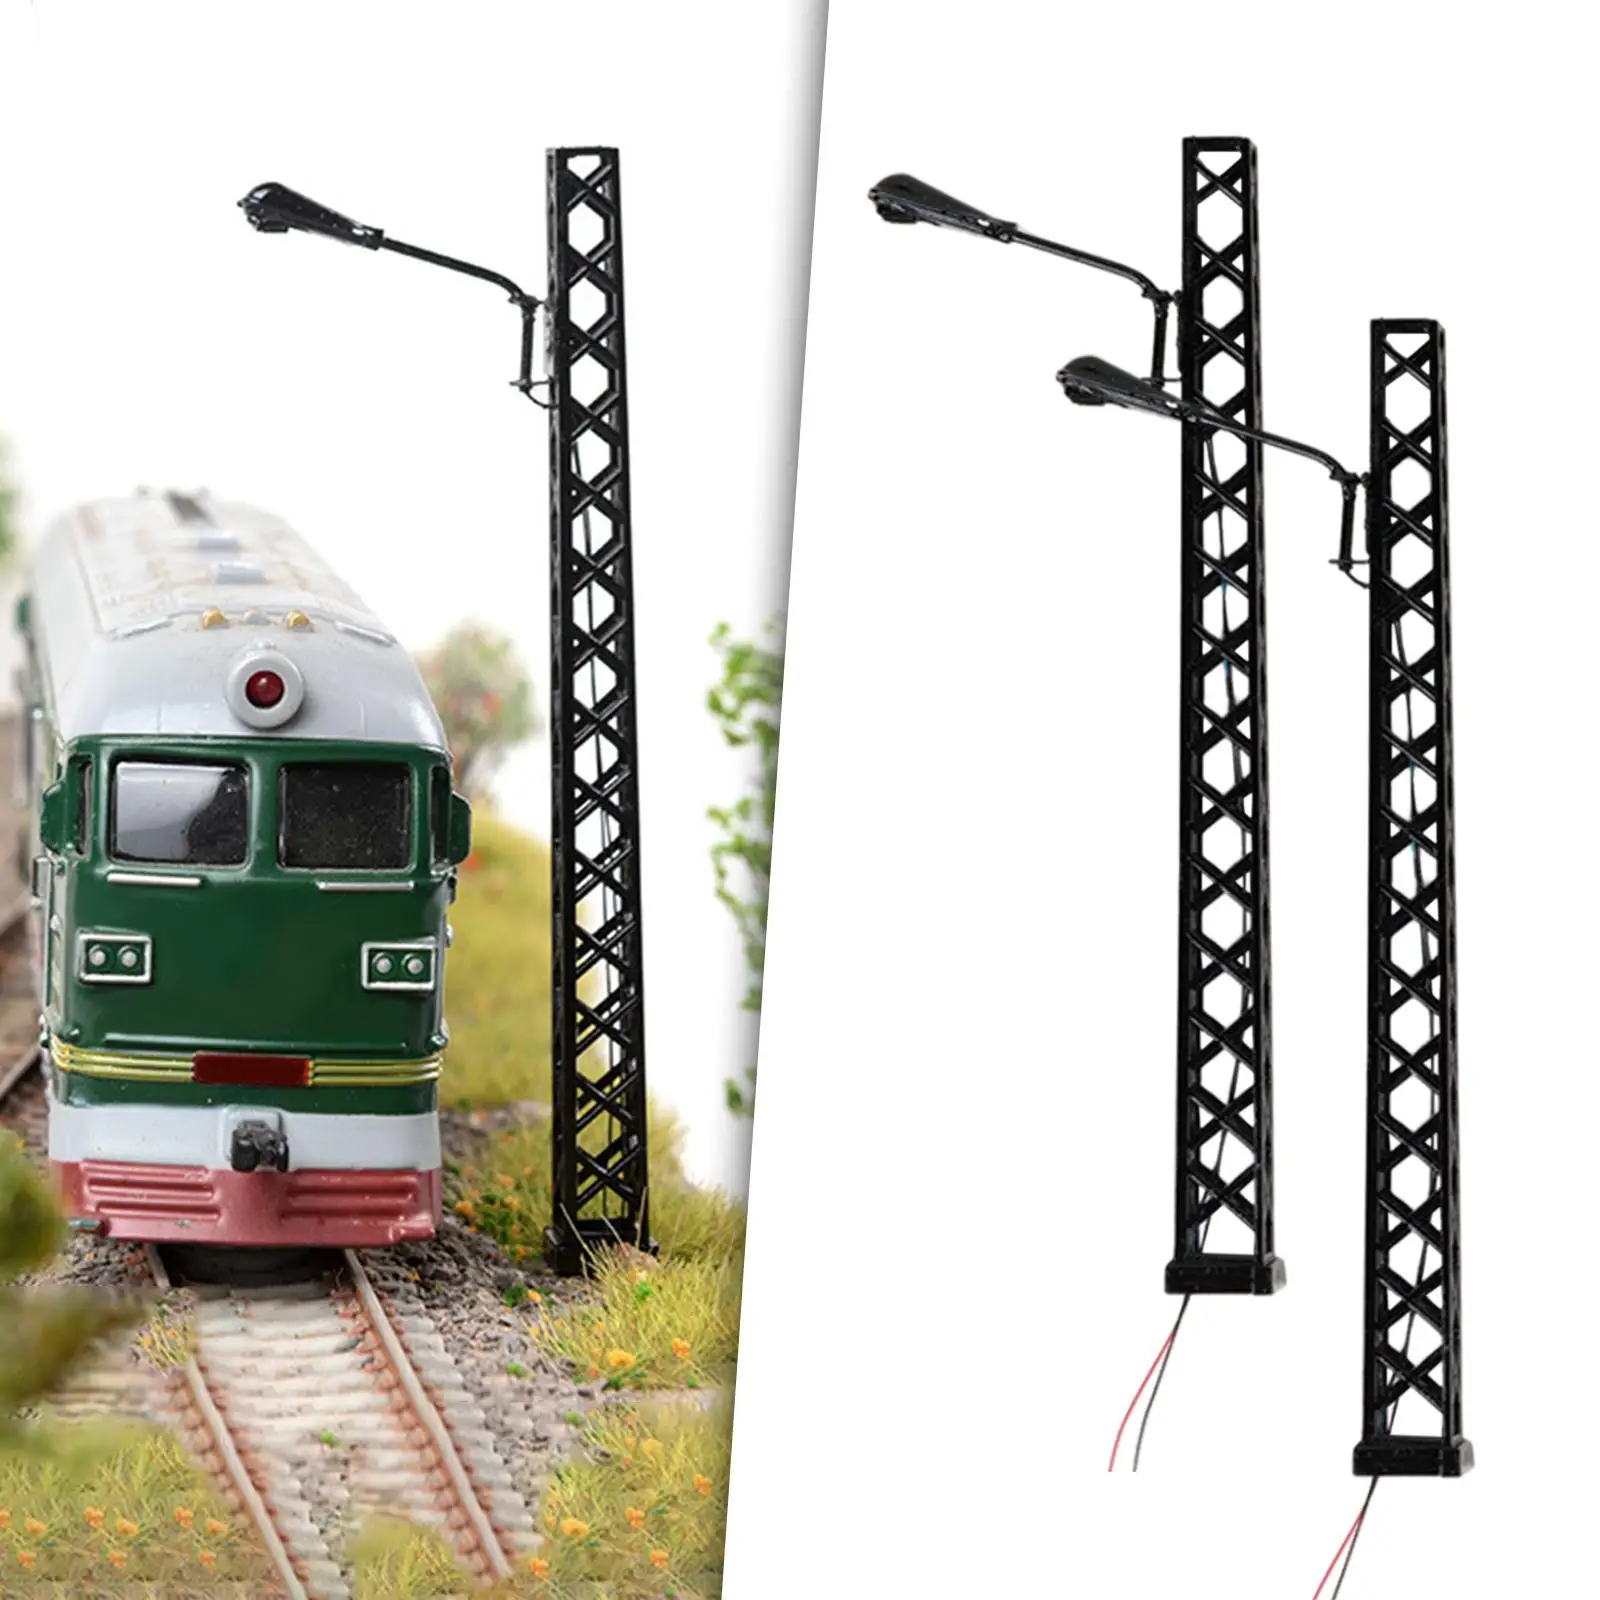 2 Pieces 1:8 Lattice Mast Light  Decorative Miniature Building Street Lamp Lamppost Landscape Model  Railway